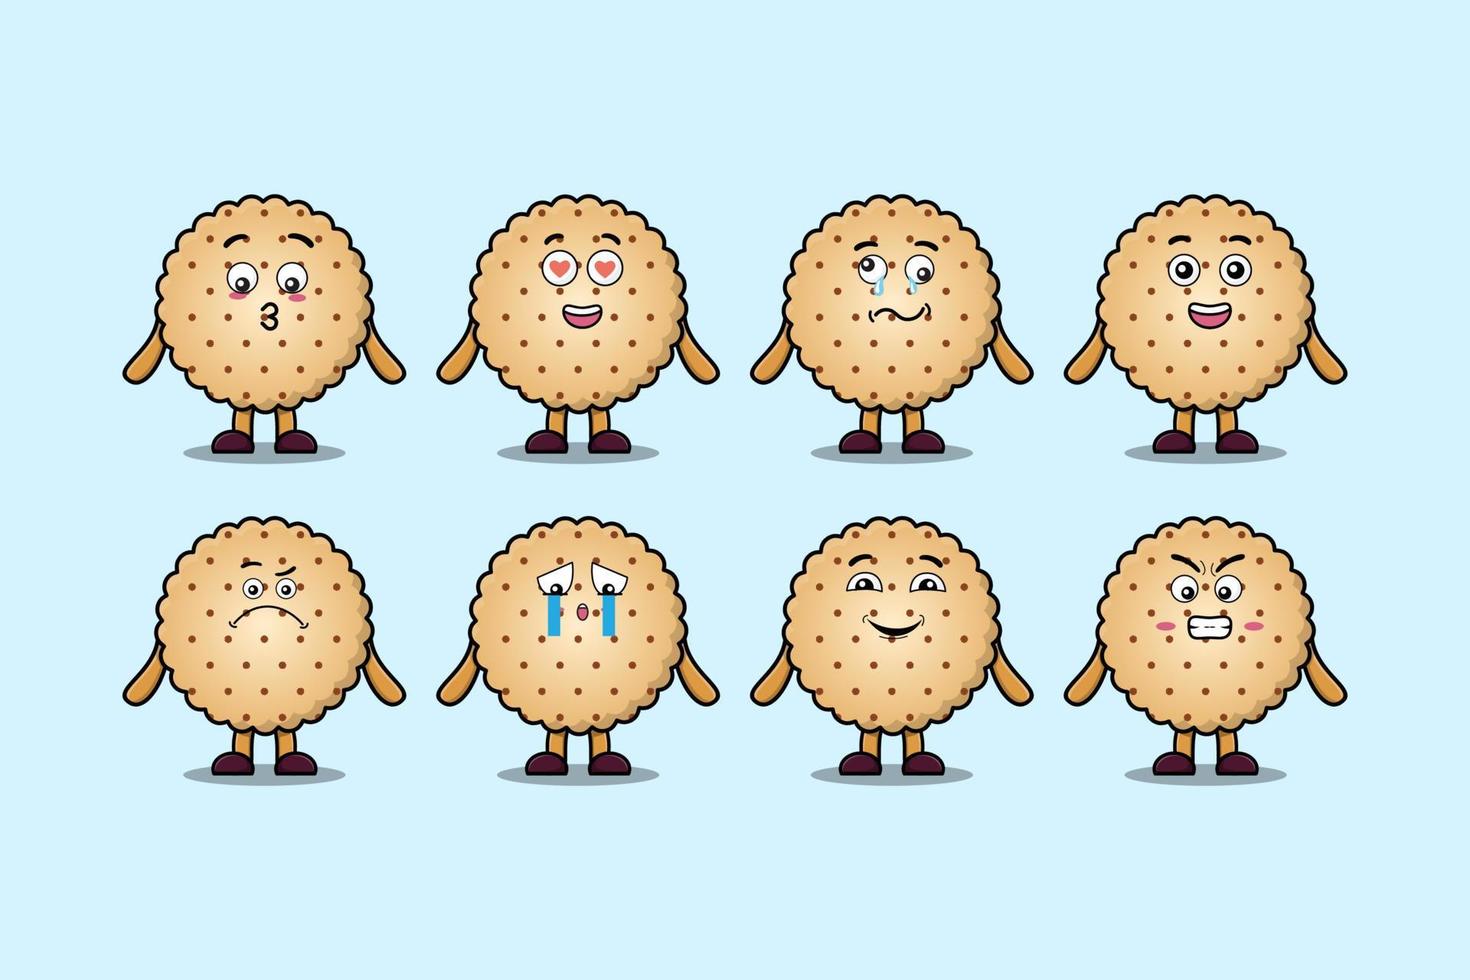 définir des expressions de personnage de dessin animé de biscuits kawaii vecteur